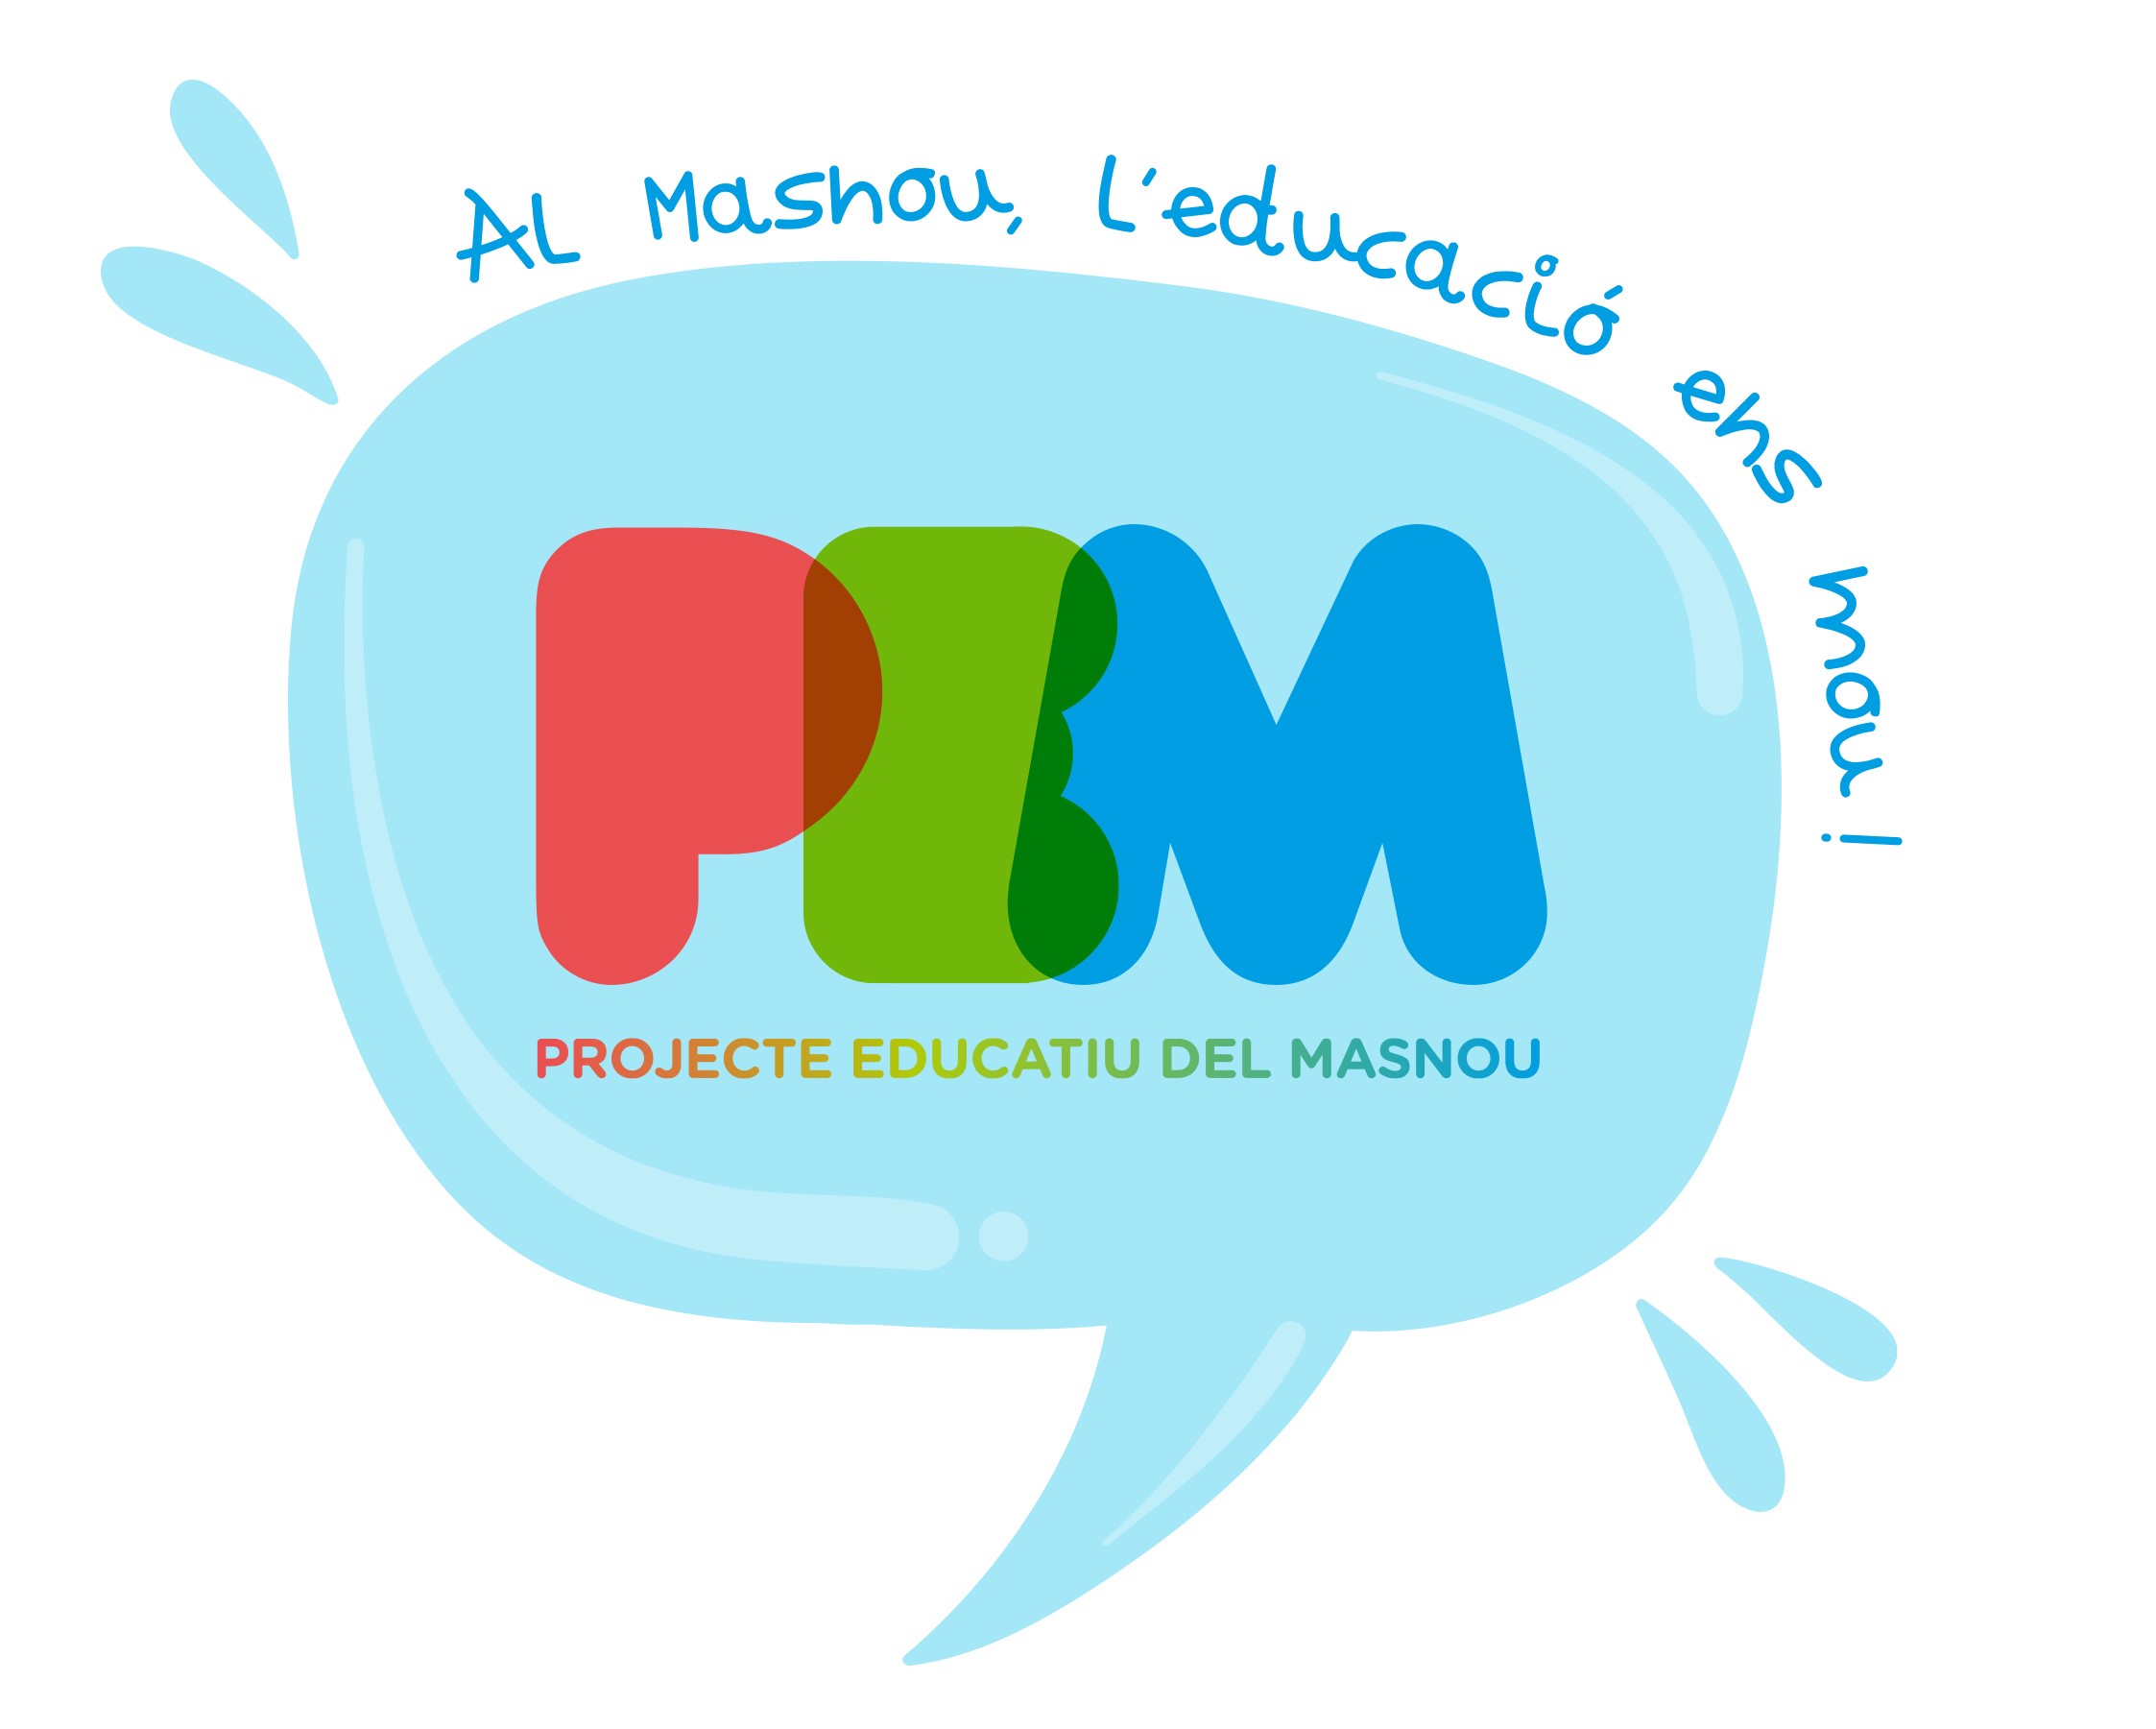 Logotip del Projecte Educatiu del Masnou.